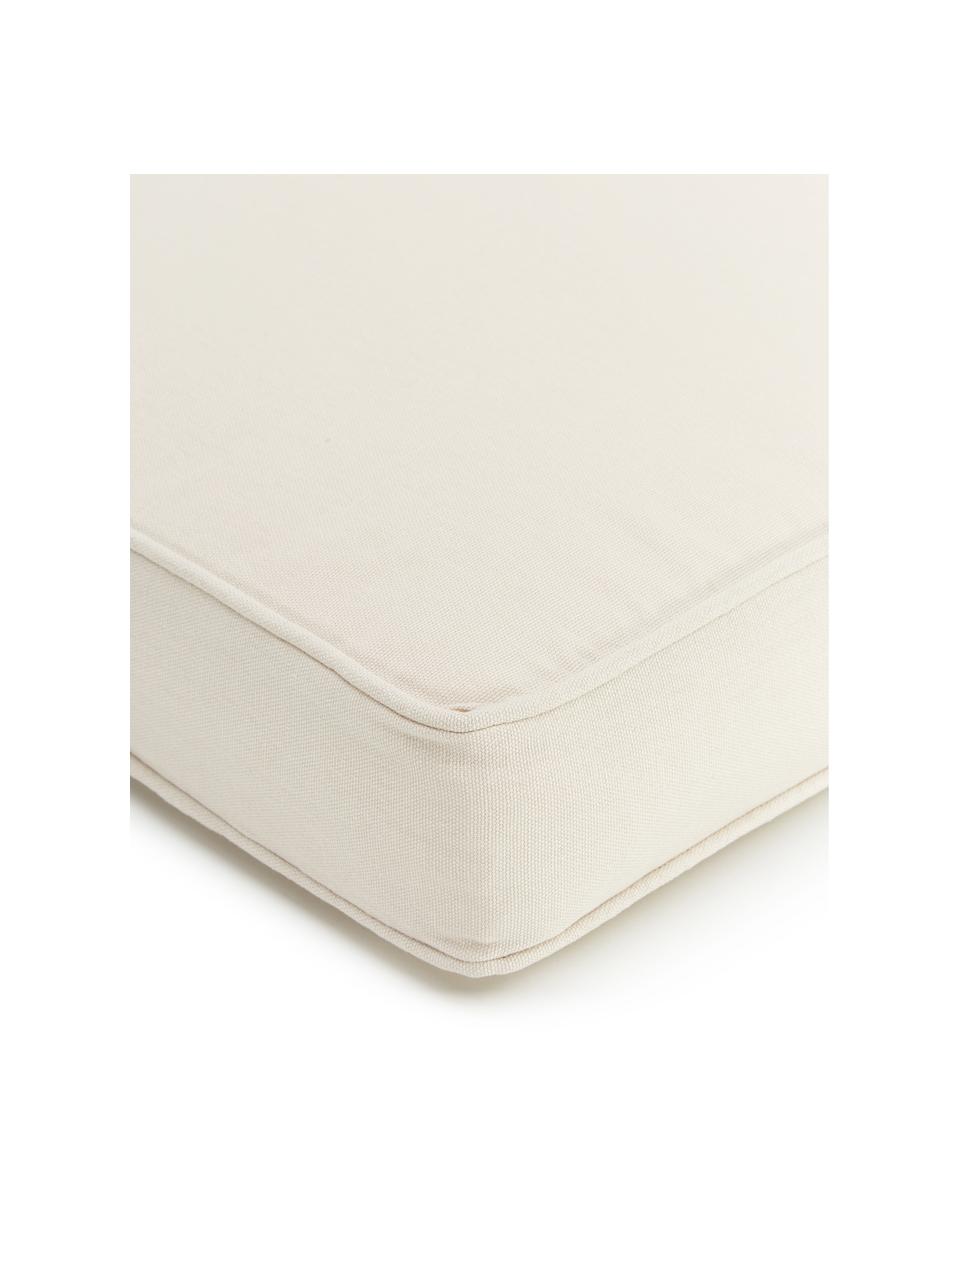 Cojines de asiento altos Zoey, 2 uds., Funda: 100% algodón, Blanco crema, An 40 x L 40 cm